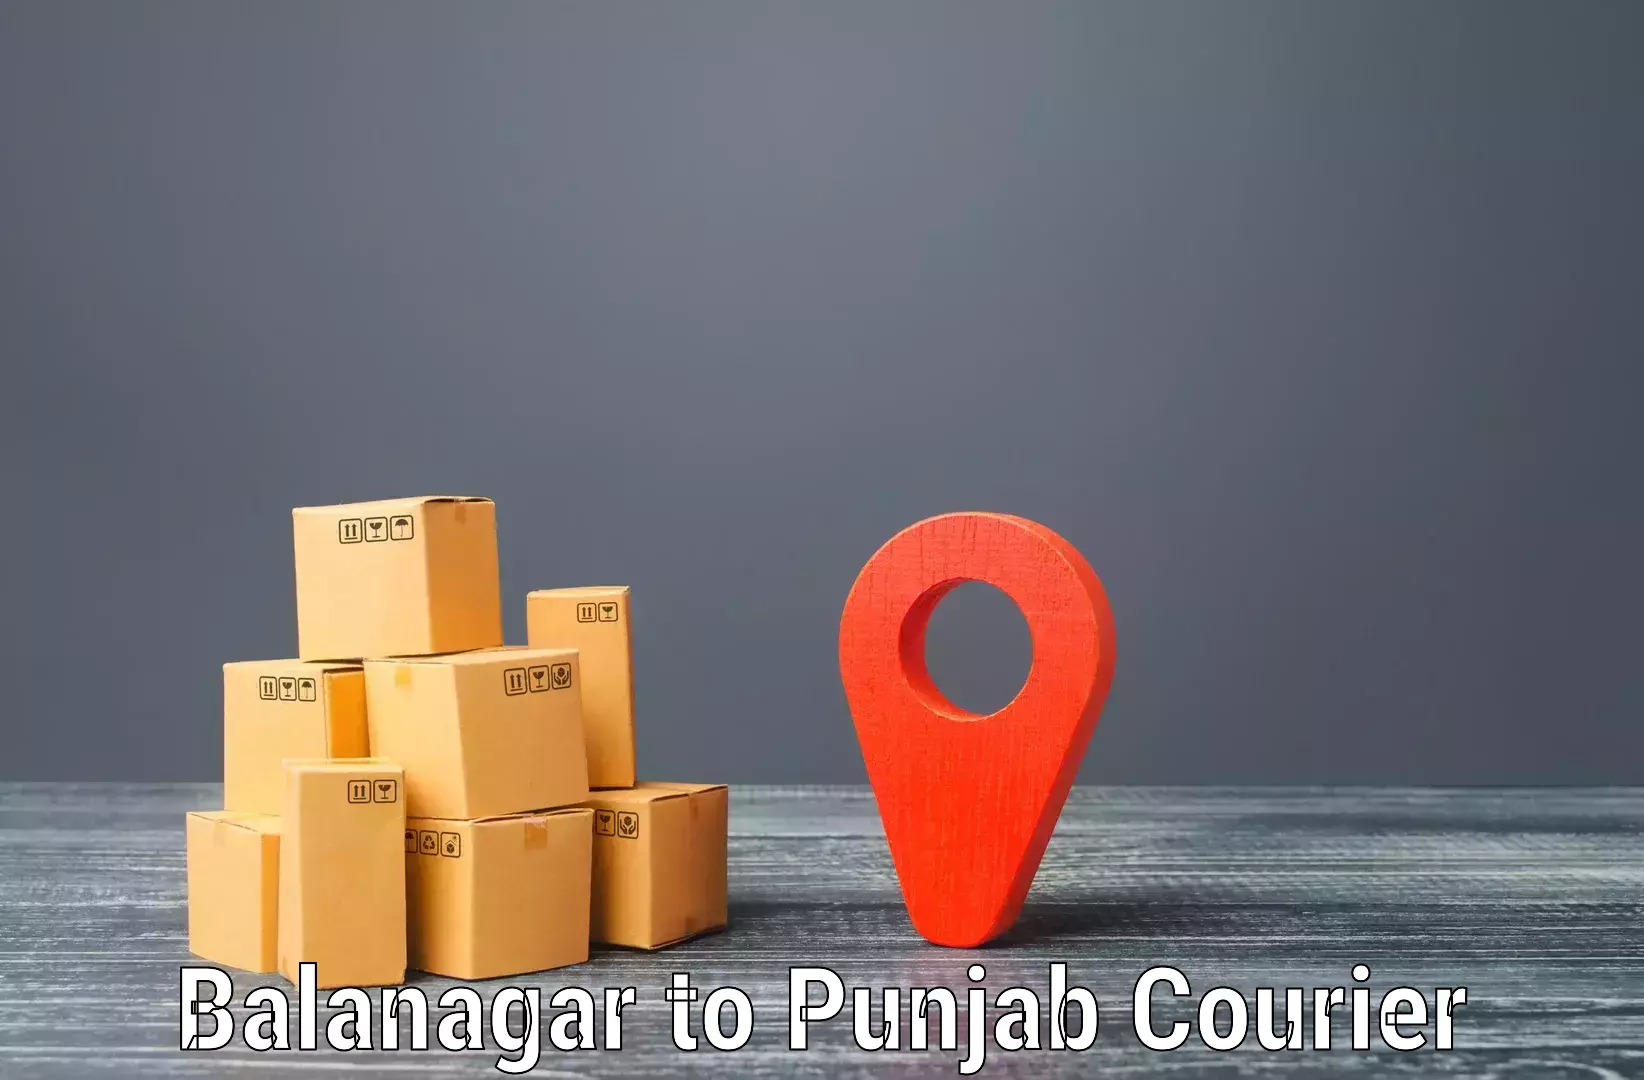 Courier service partnerships in Balanagar to Muktsar